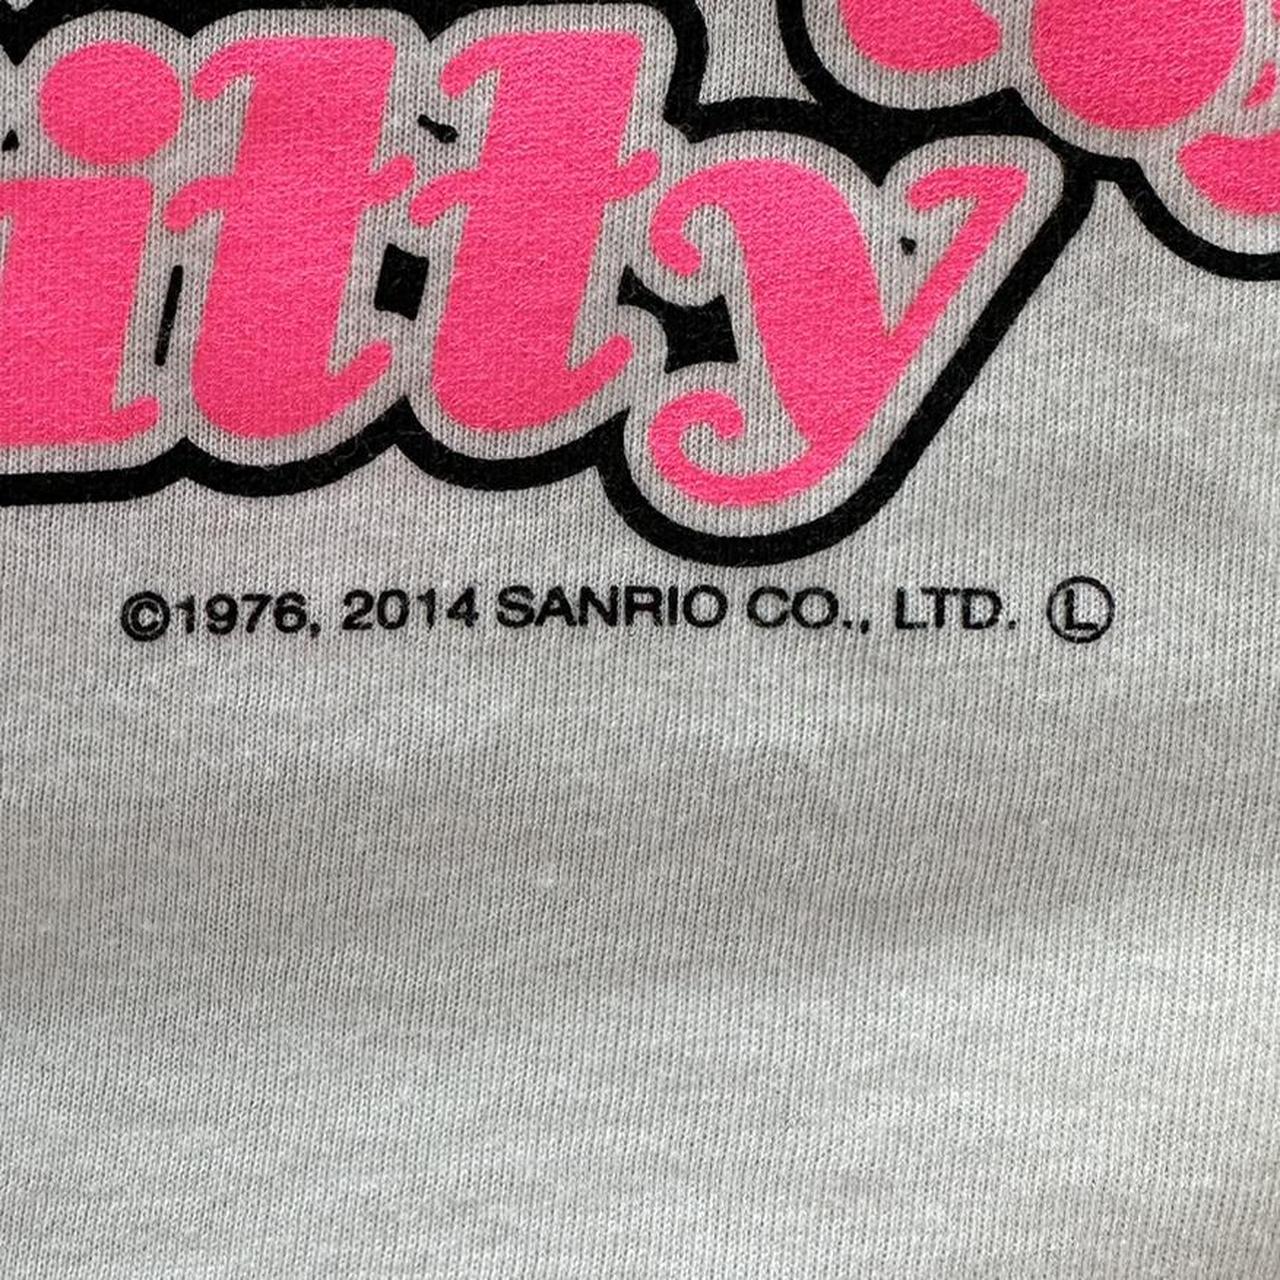 Sanrio Women's White and Pink T-shirt (4)